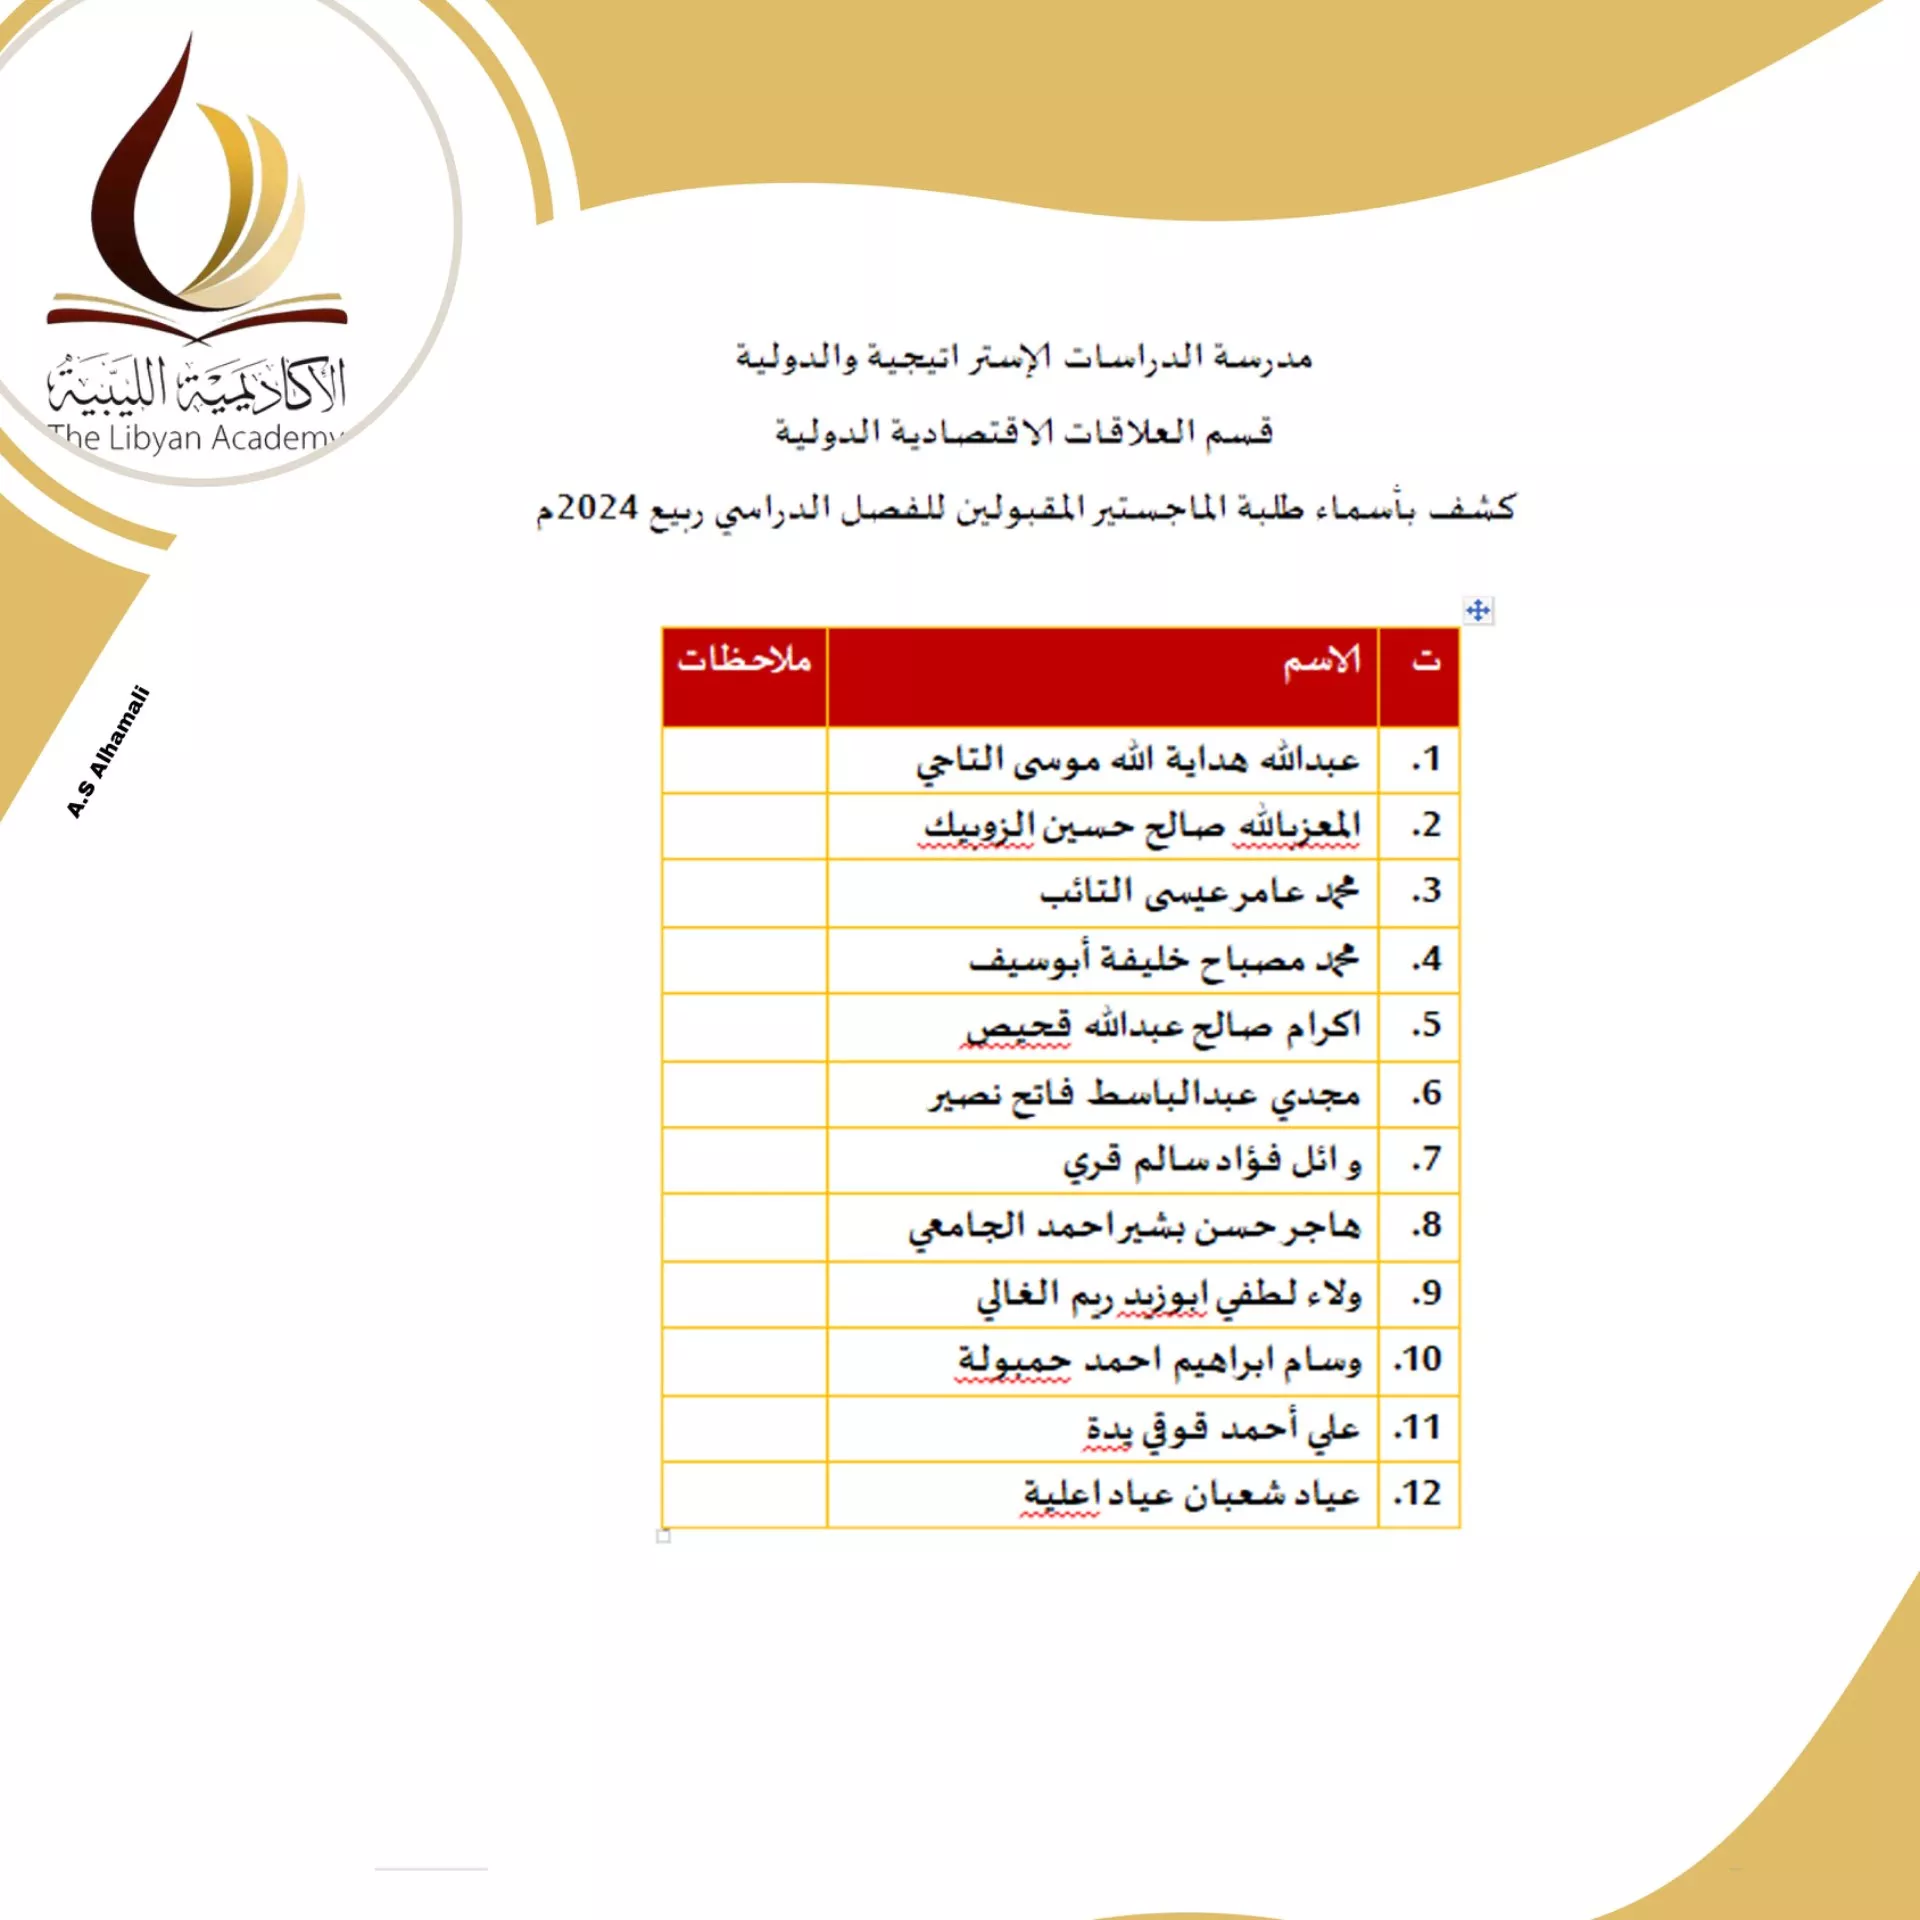 نتائج امتحانات المفاضلة للمتقدمين لدراسة الماجستير بالأكاديمية الليبية للدراسات العليا لمدرسة الدراسات الاستراتيجية و الدولية    للفصل الدراسي خريف 2023/ 2024